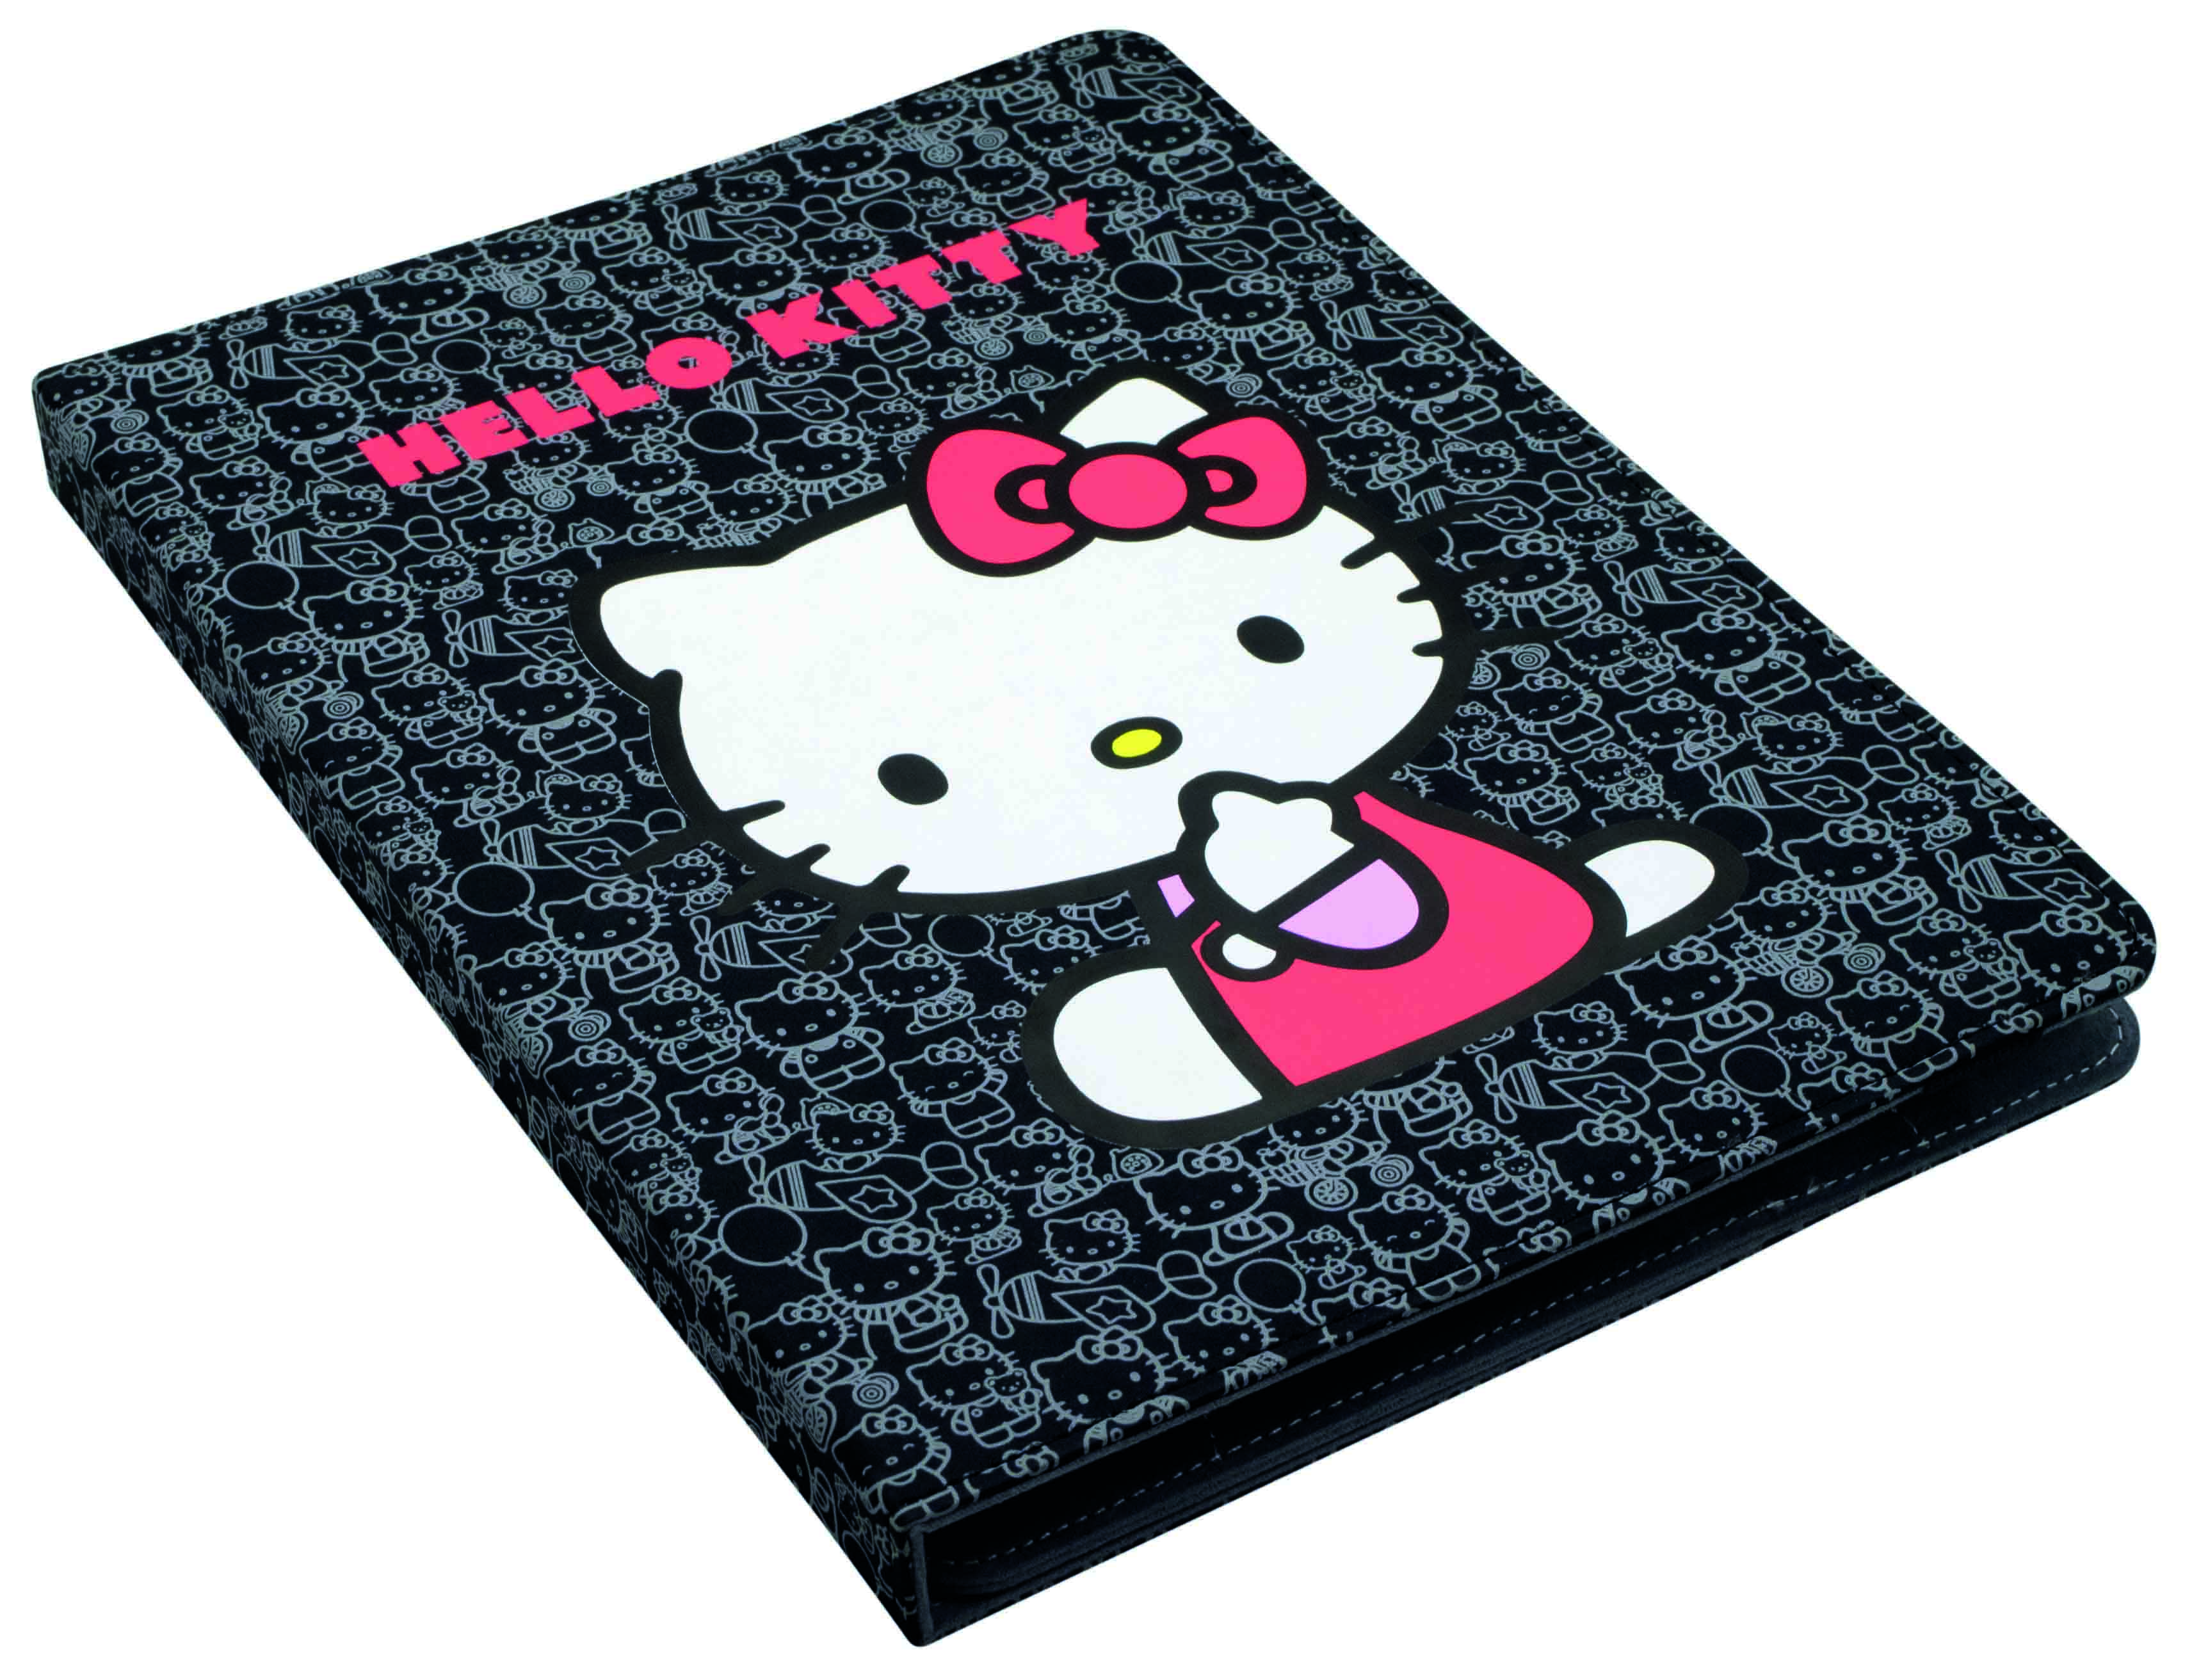 EVUN000428 Hello Kitty Black 6